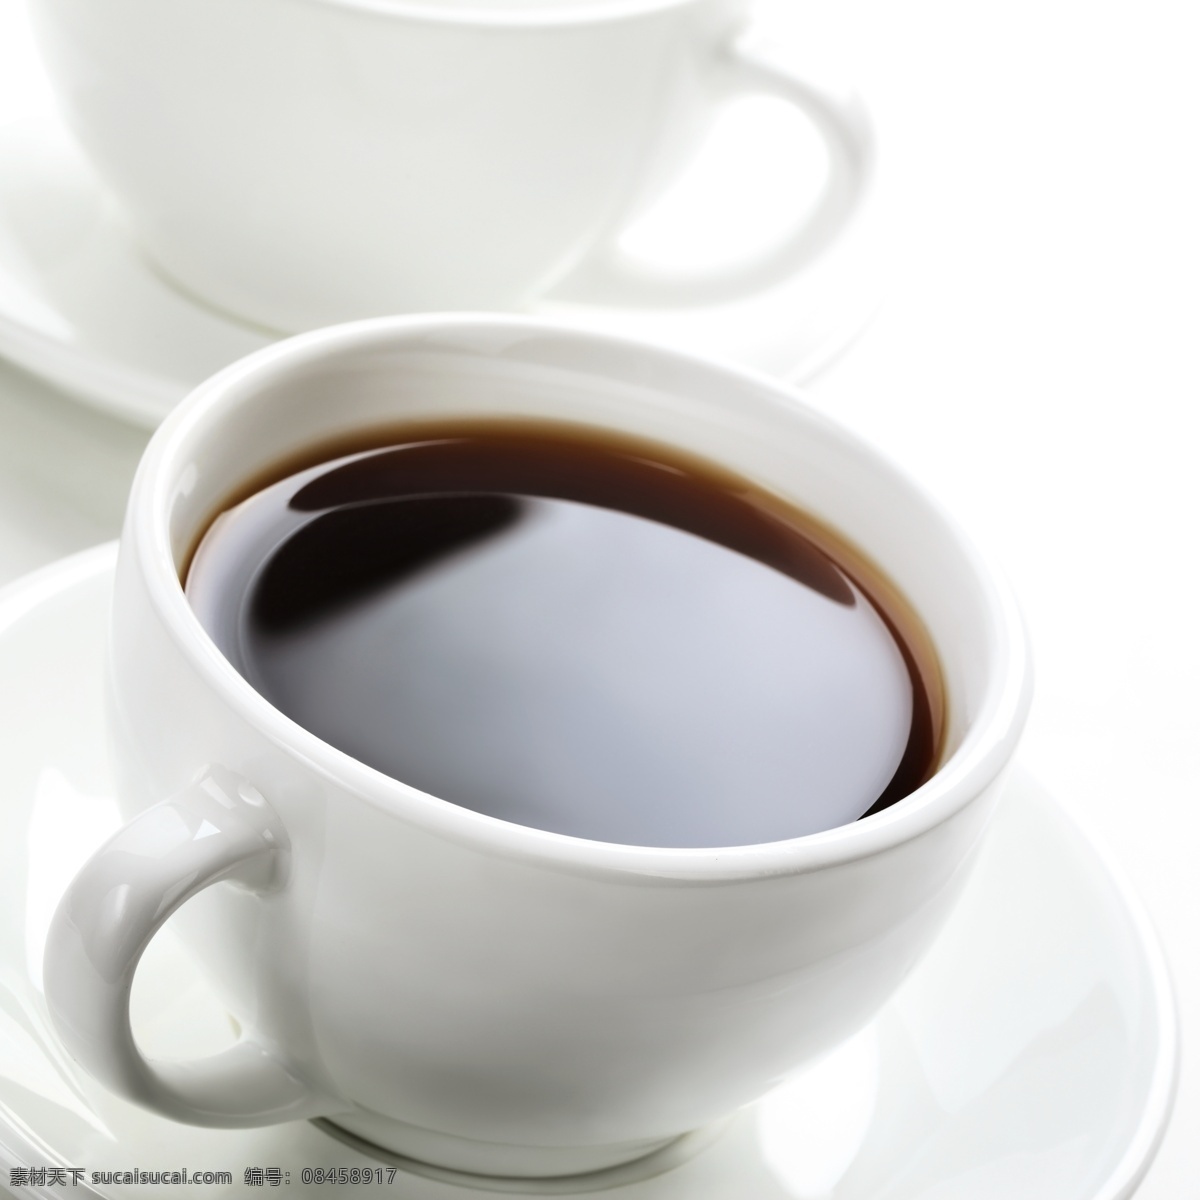 盘子 里 咖啡 盘子里的咖啡 饮料 餐饮美食 陶瓷杯 水杯 咖啡杯 彩色杯子 生活用品 传统工艺品 生活百科